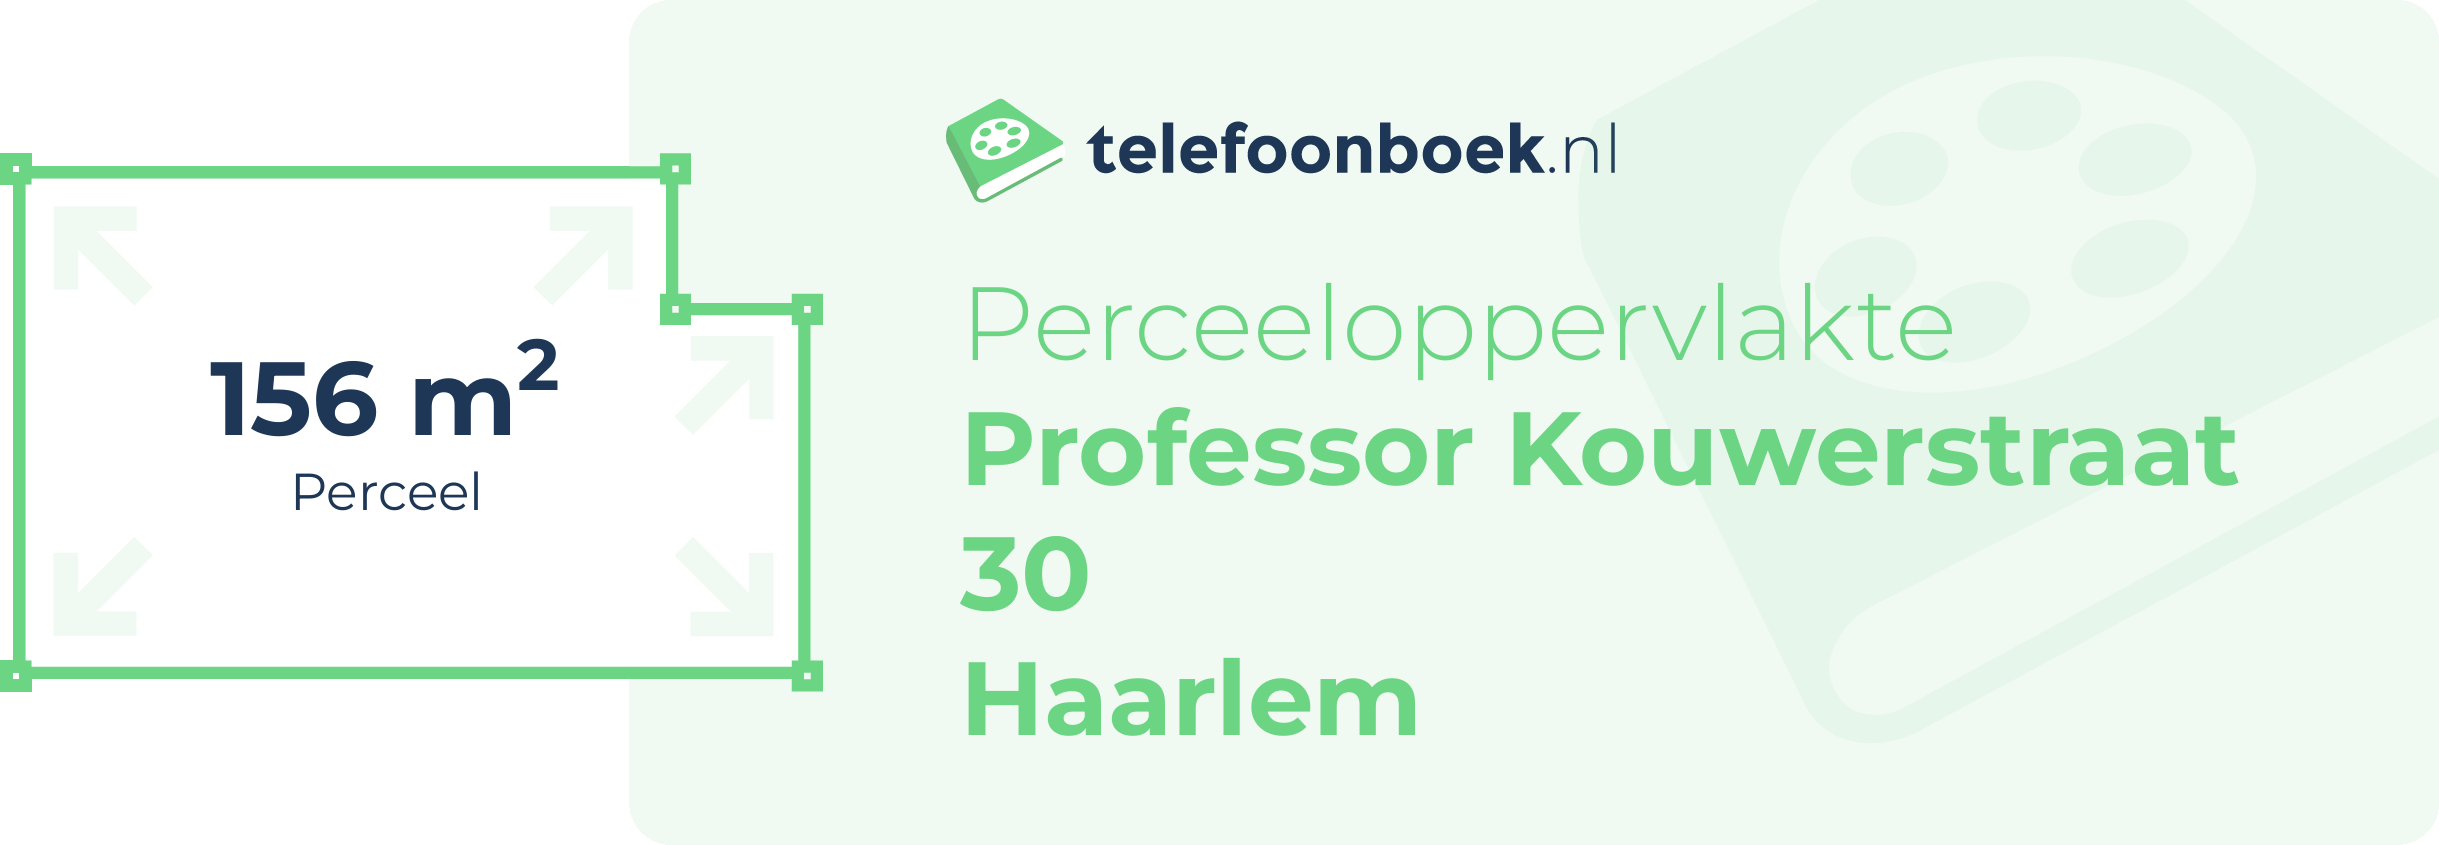 Perceeloppervlakte Professor Kouwerstraat 30 Haarlem